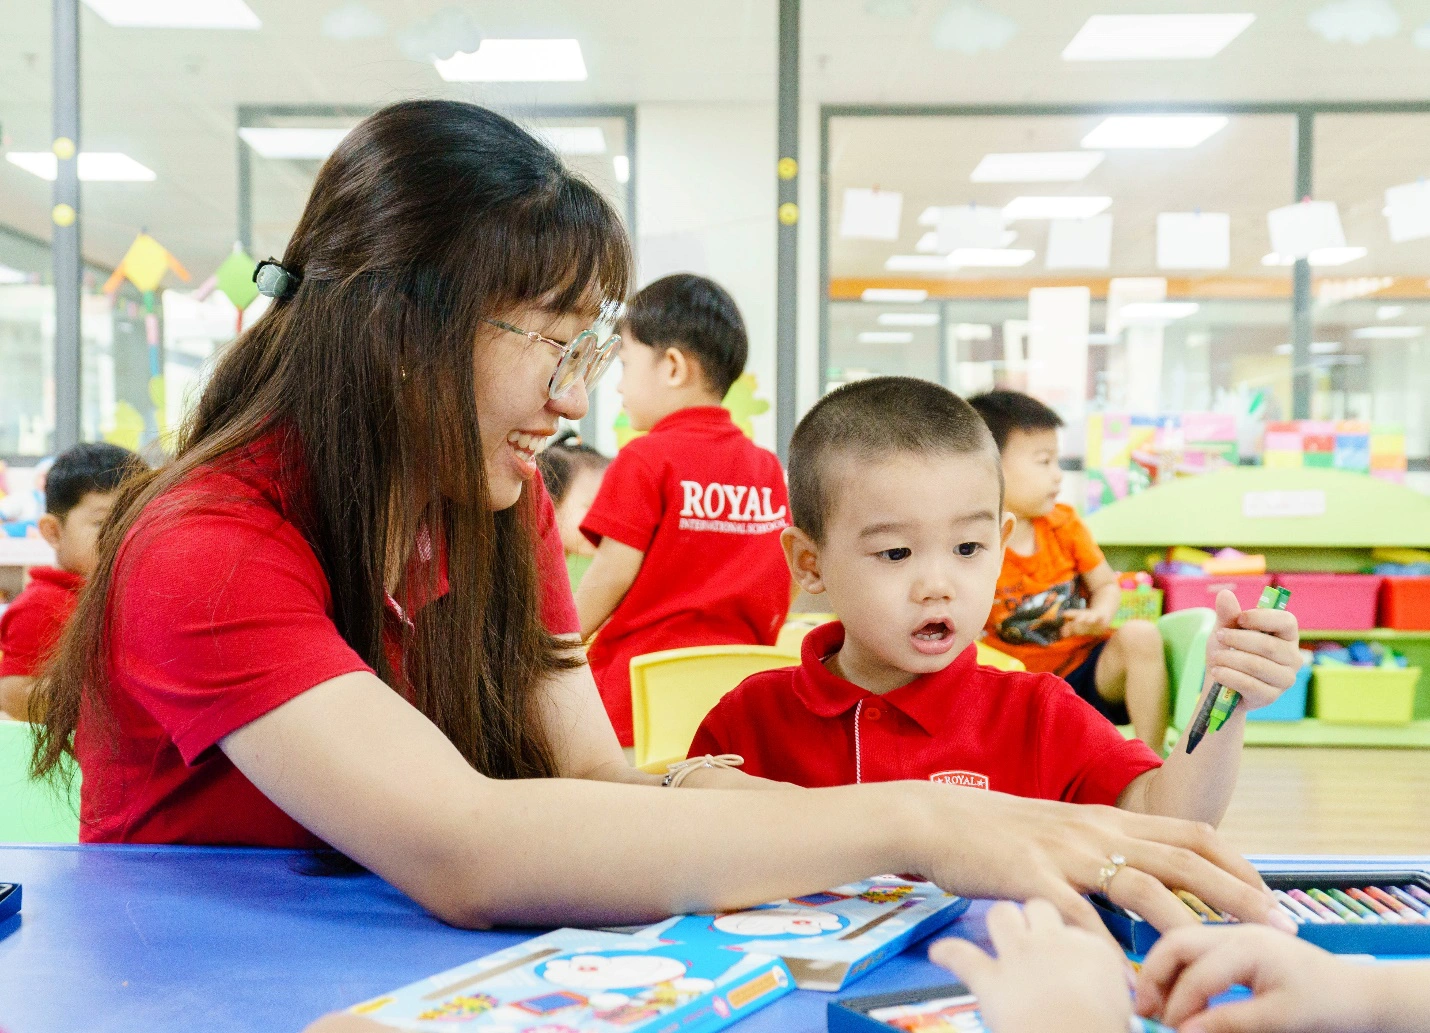 Ưu đãi học phí “khủng” dành cho trẻ mầm non khi đăng ký học tại Royal School Phú Lâm - Ảnh 2.